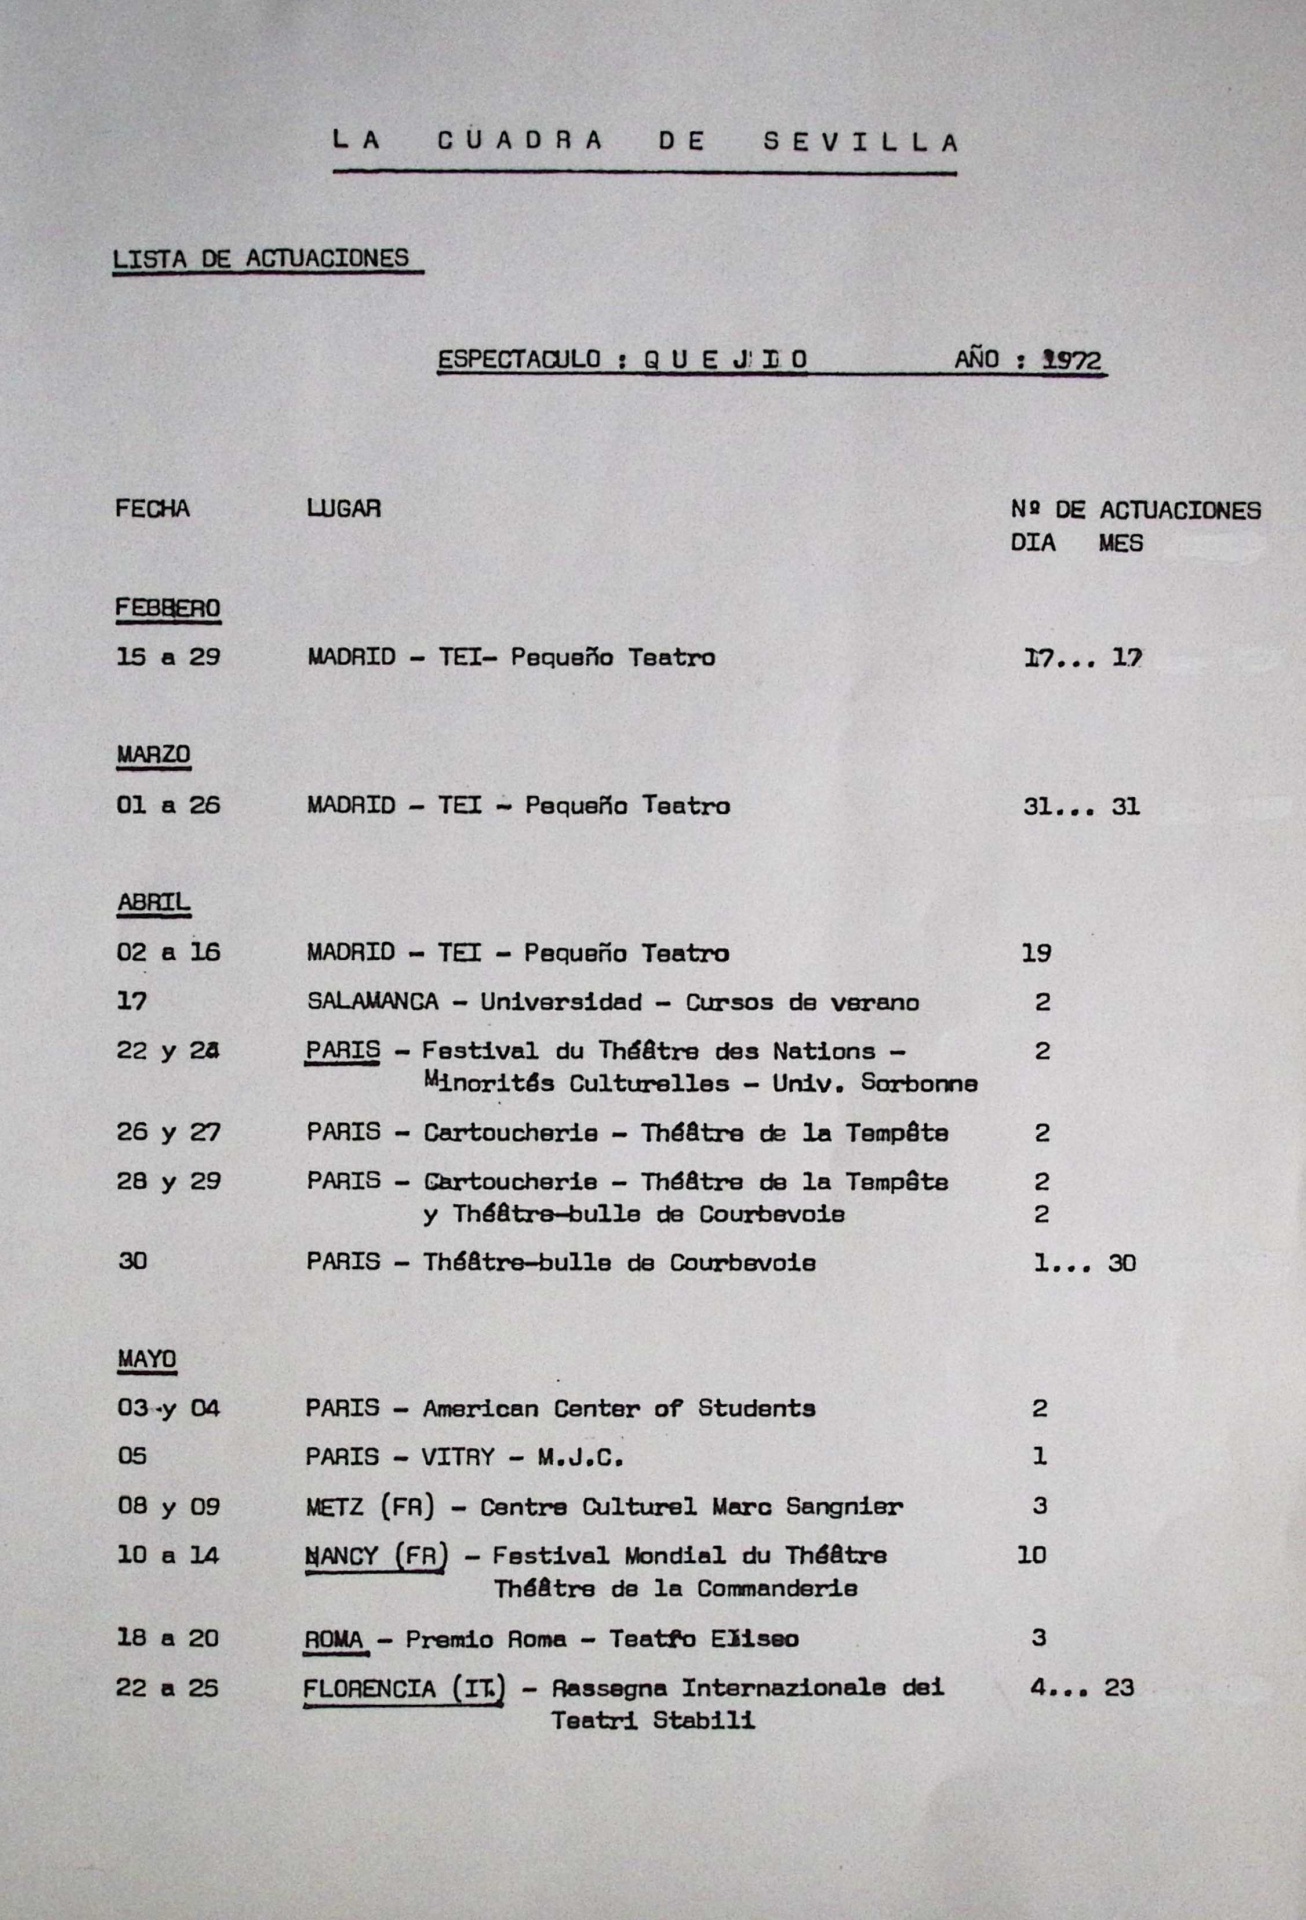 [Lista de actuaciones de los espectáculos Quejío y Los palos en los años 1972-1976]